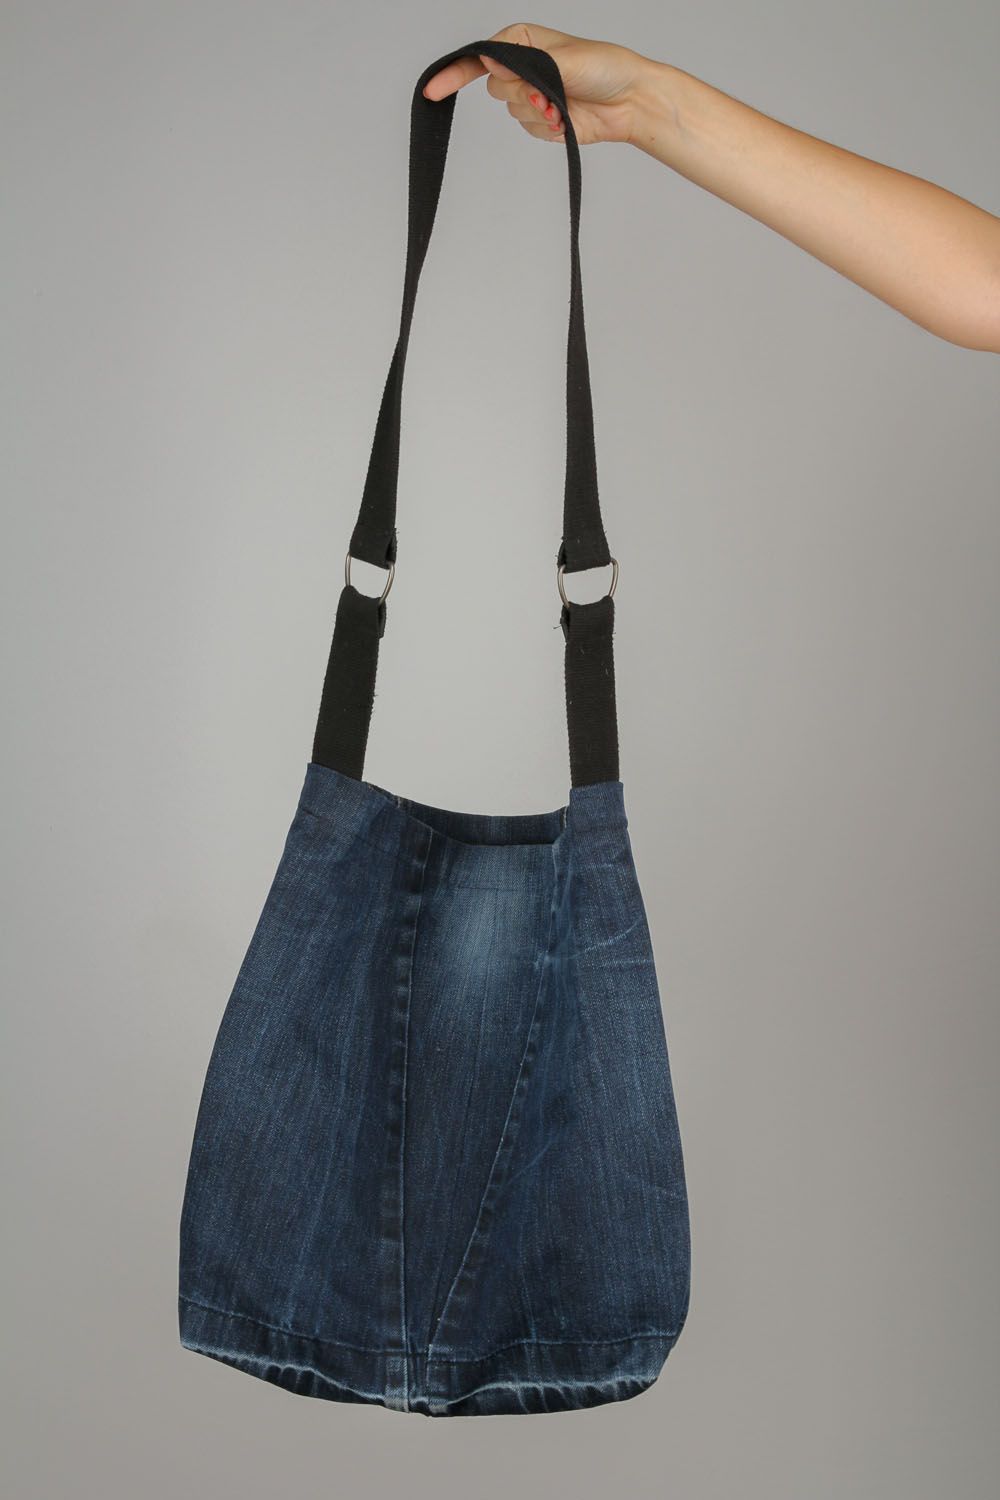 Gros sac à main en jean fait main bleu original pour femme décoré d'application  photo 3